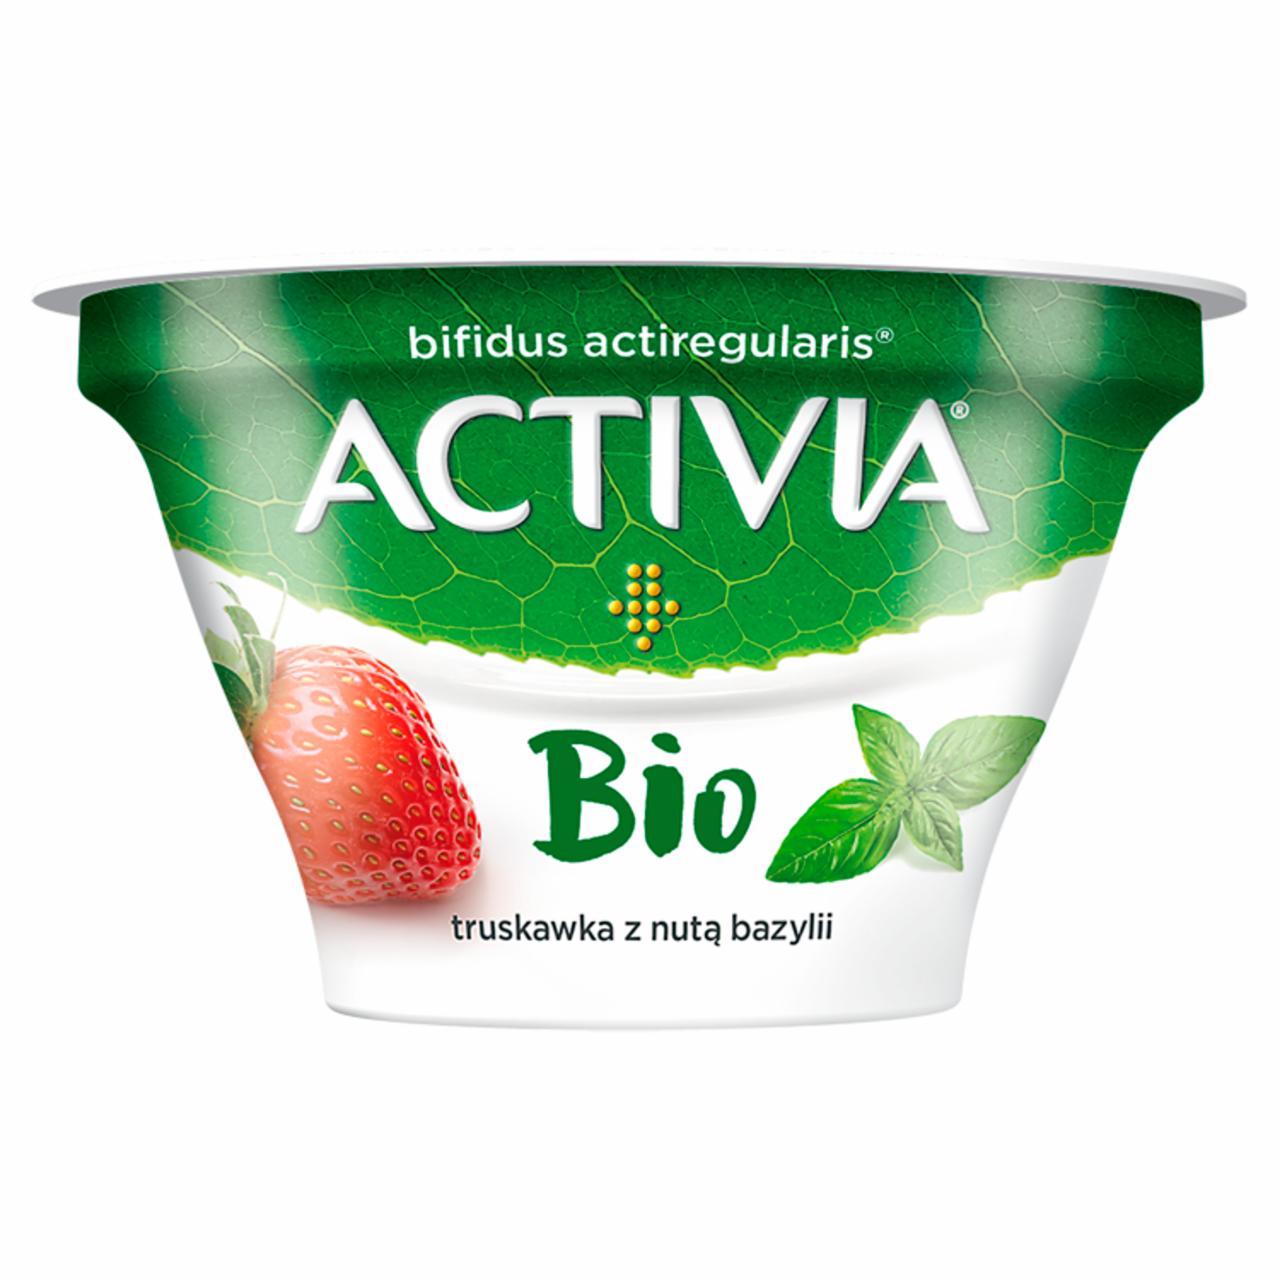 Zdjęcia - Danone Activia Bio Jogurt truskawka z nutą bazylii 150 g